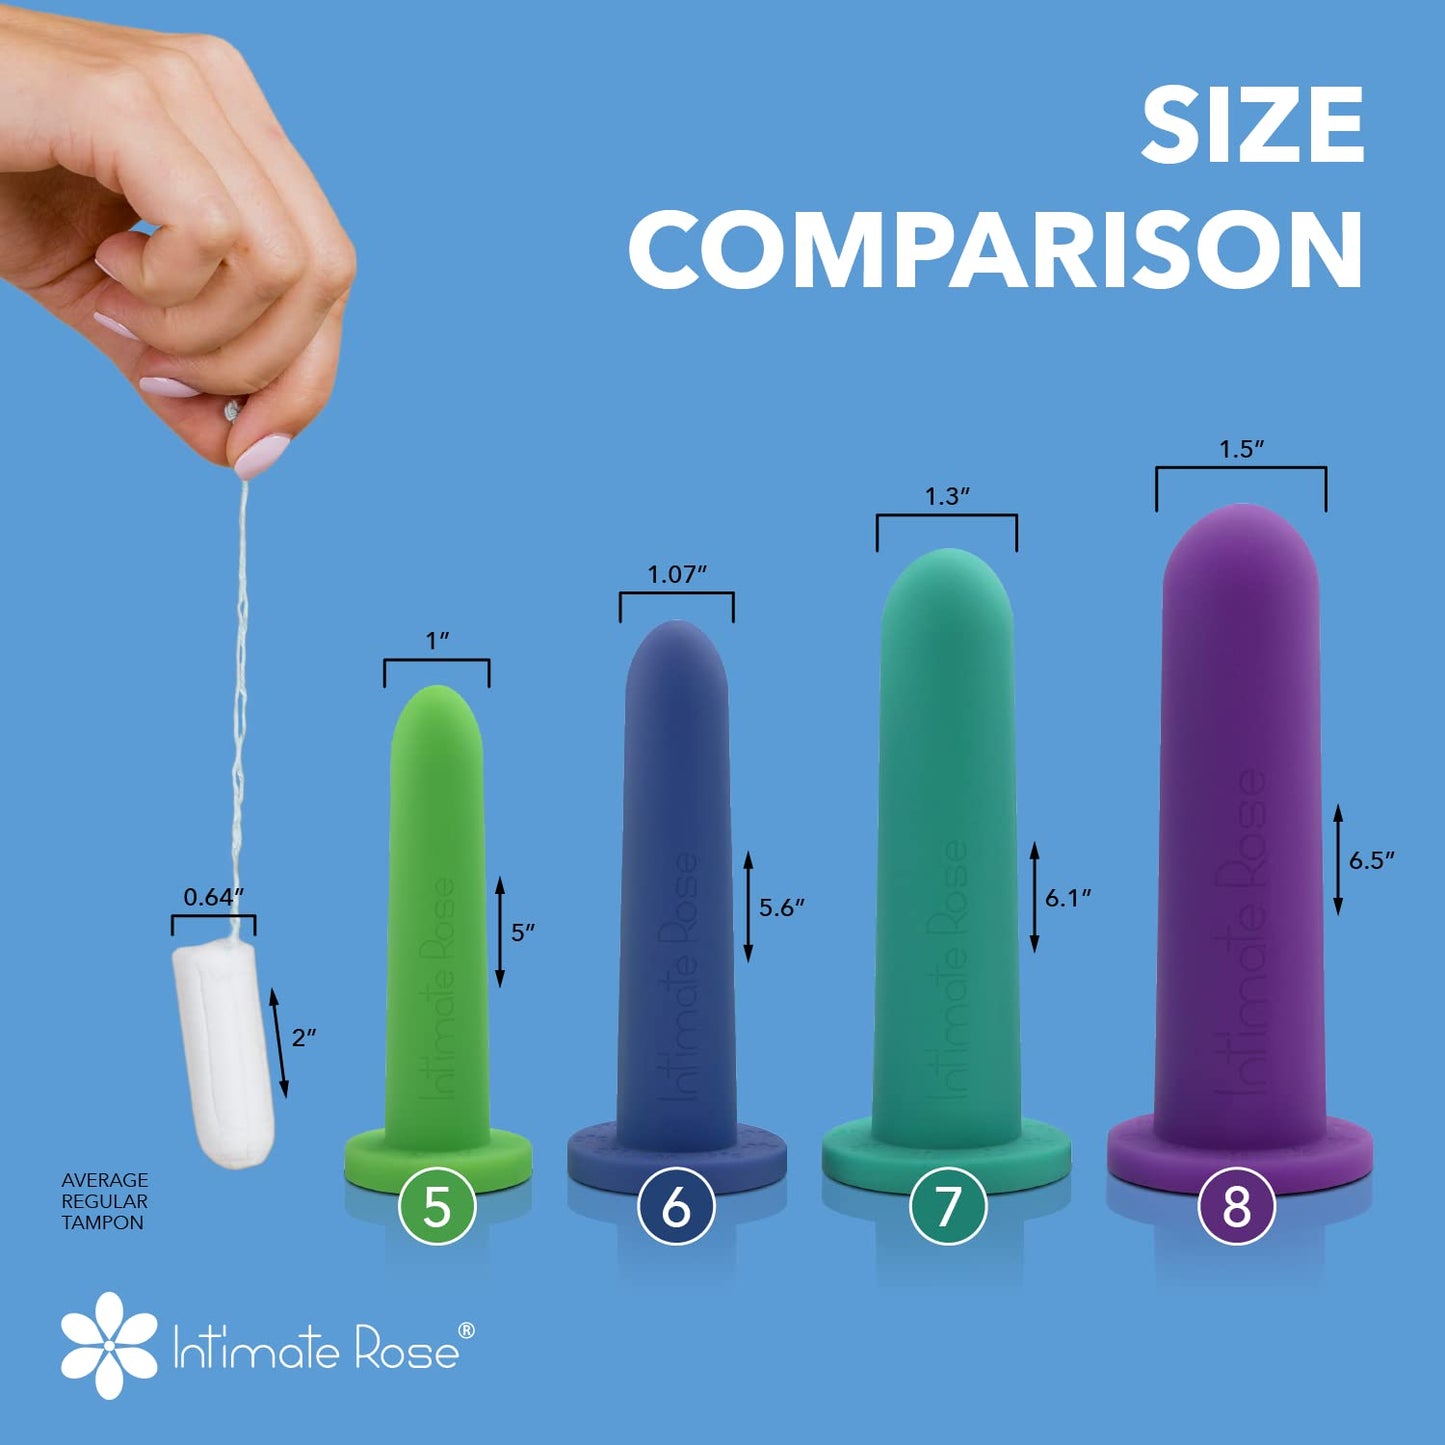 Large Silicone Vaginal Dilators - 5-8 sizes